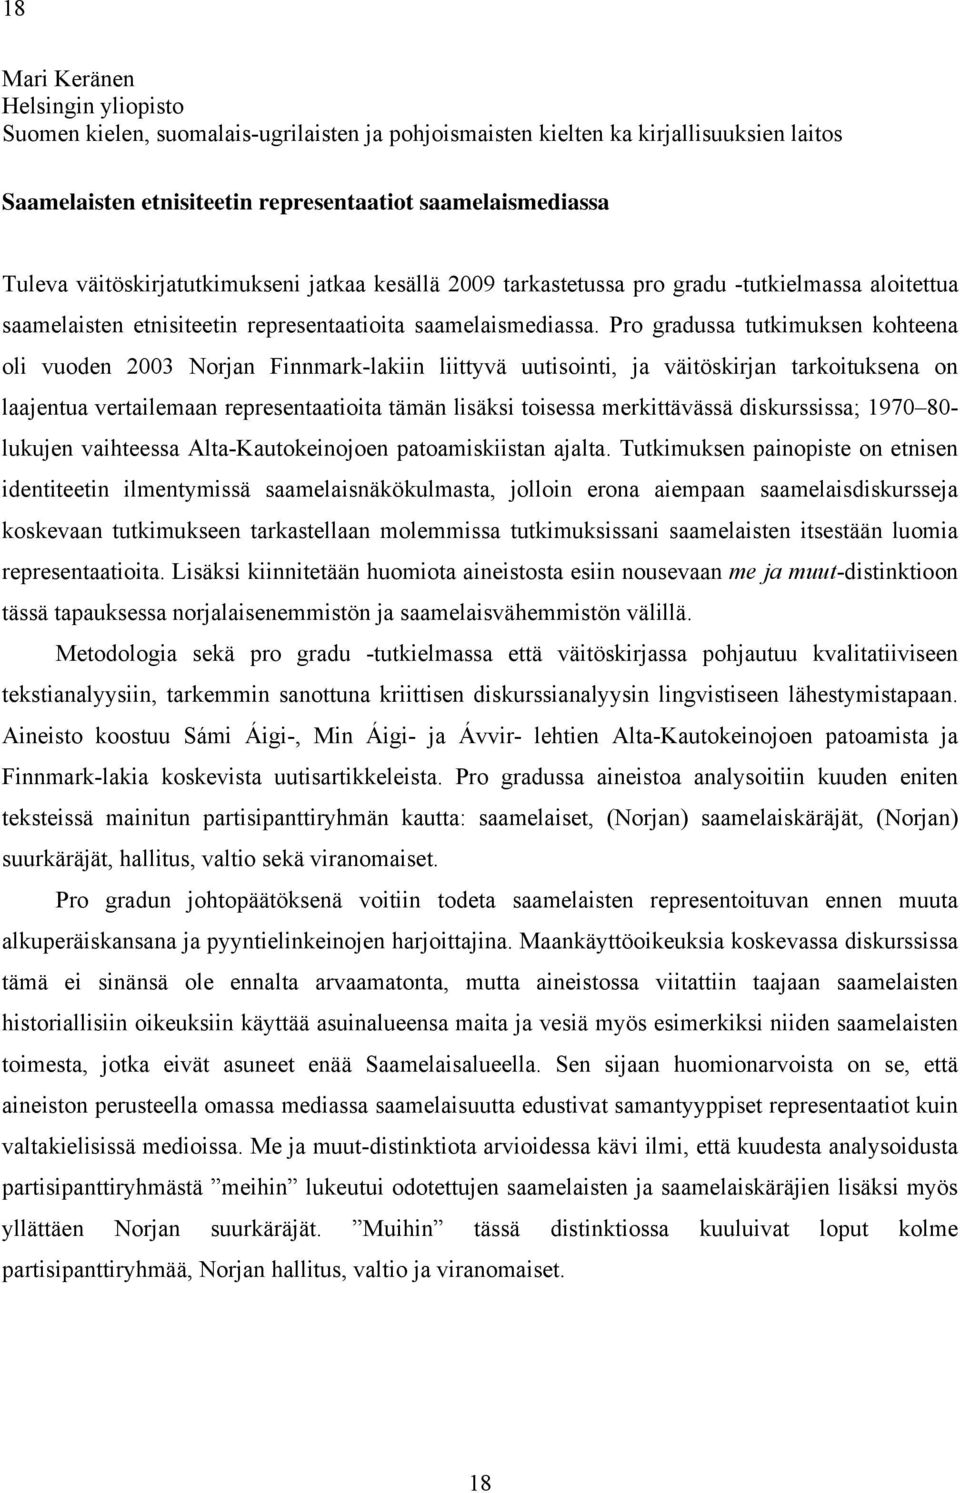 Pro gradussa tutkimuksen kohteena oli vuoden 2003 Norjan Finnmark-lakiin liittyvä uutisointi, ja väitöskirjan tarkoituksena on laajentua vertailemaan representaatioita tämän lisäksi toisessa